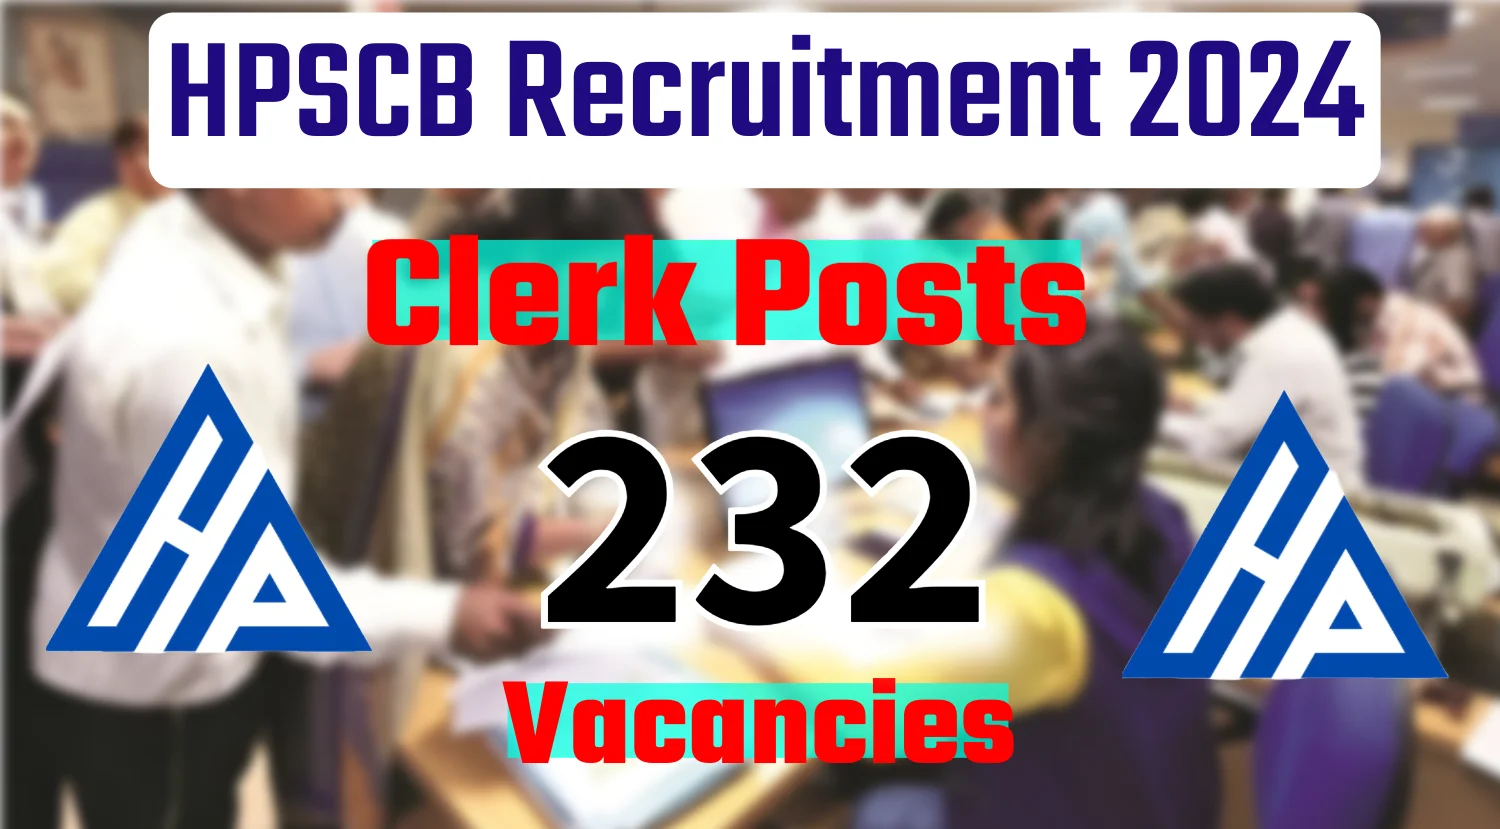 HPSCB Clerks Recruitment